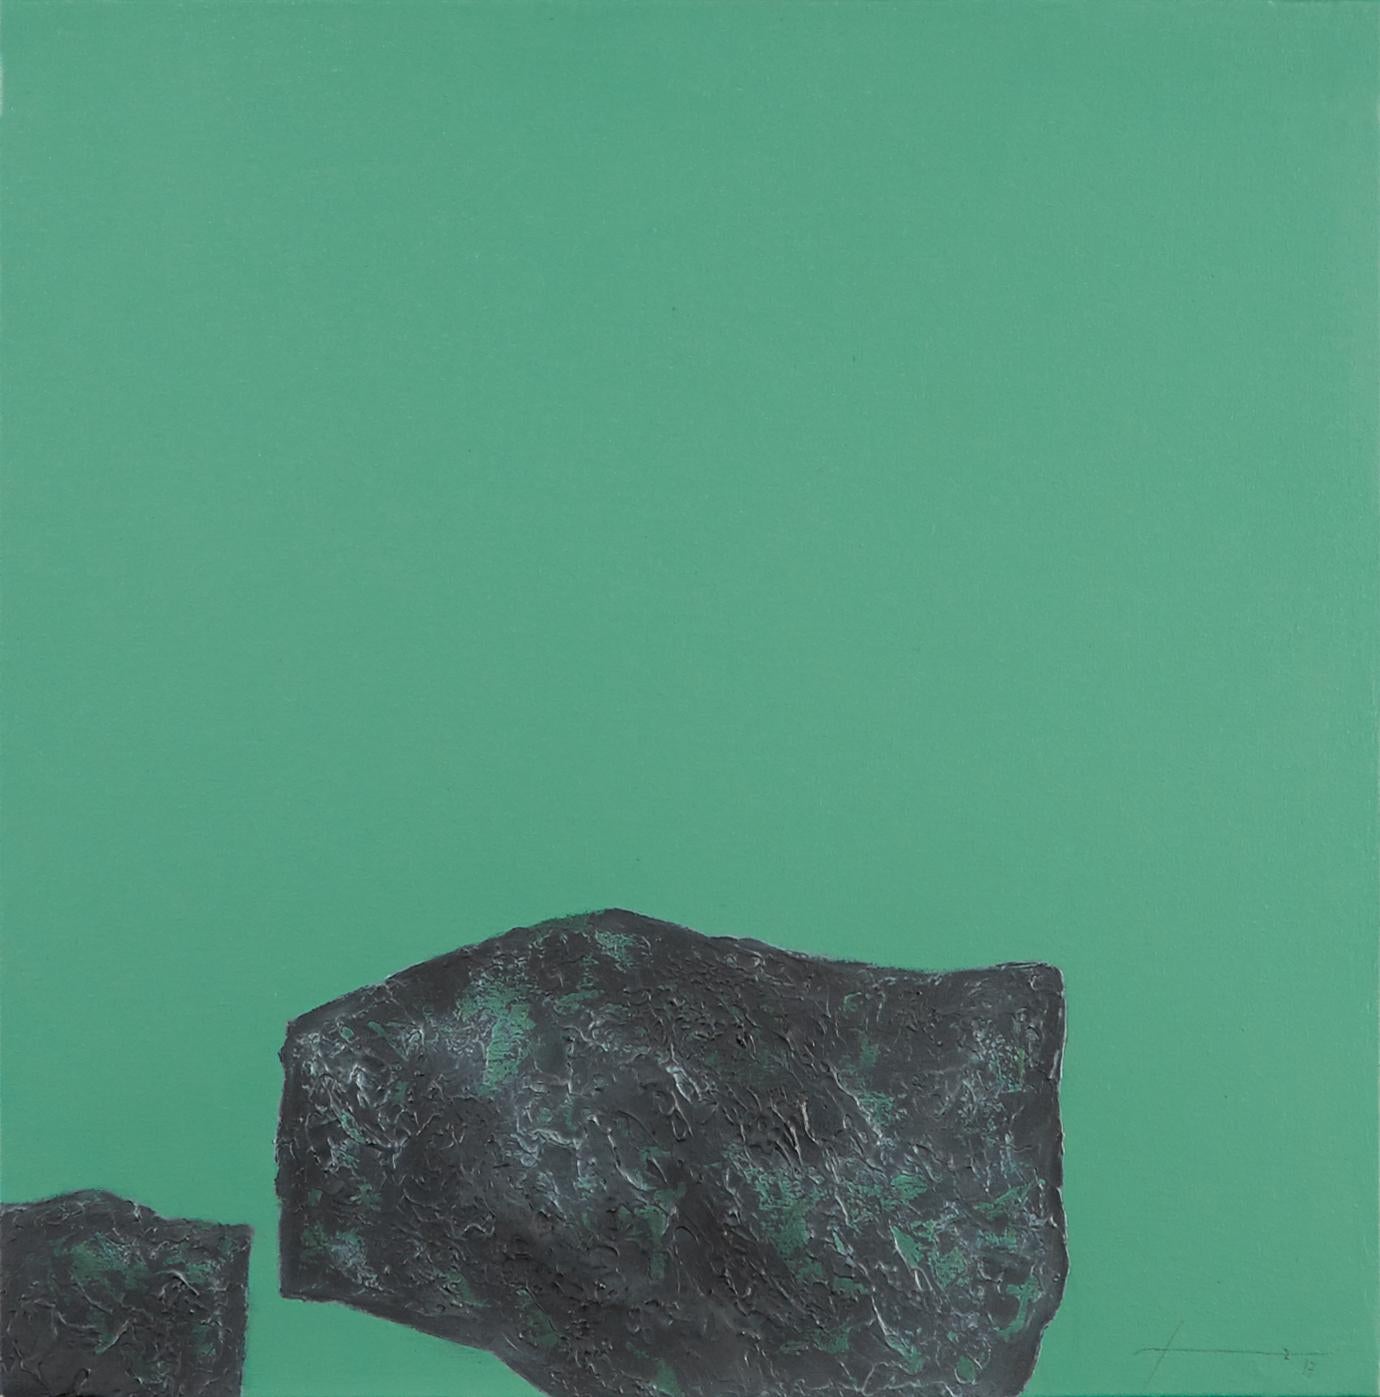 Stones XXIV - 21st Century, Contemporary, Abstract Painting, Mixed Media